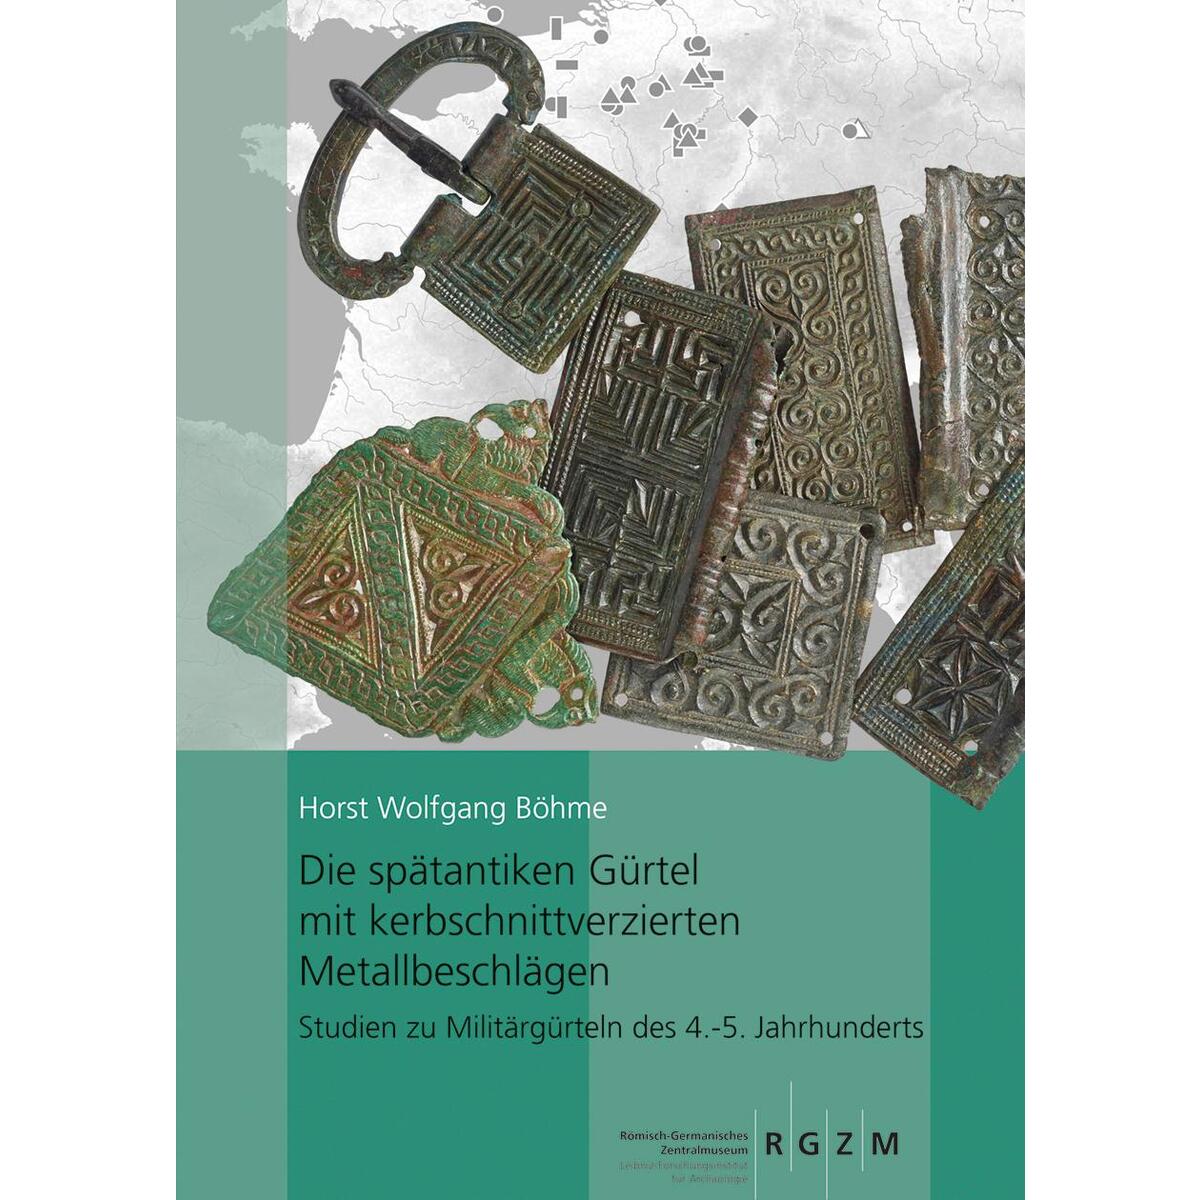 Die spätantiken Gürtel mit kerbschnittverzierten Metallbeschlägen. von Schnell & Steiner GmbH